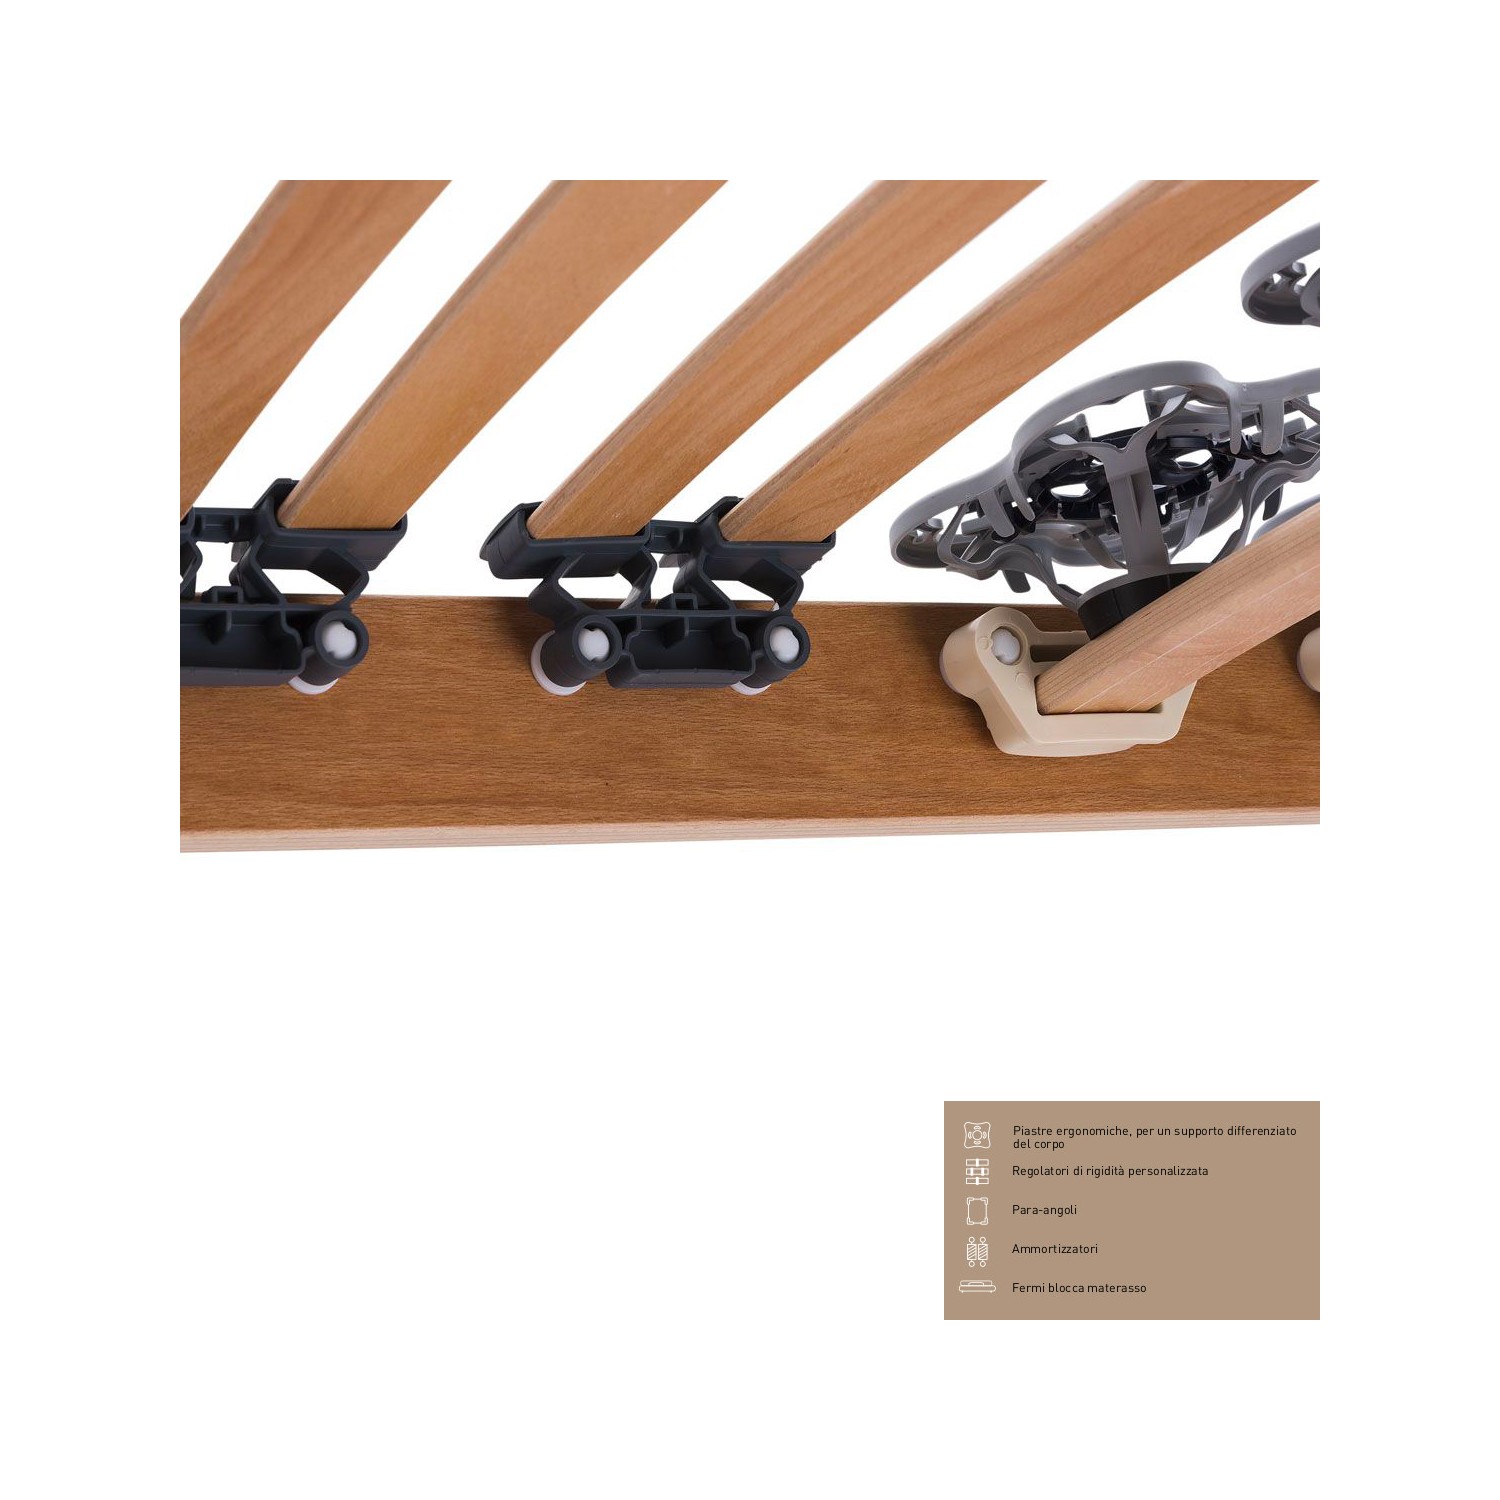 Rete Magniflex ERGO DUE FISSA cm 120 x 190/195/200 piastre ergonomiche, regolatori di rigidità doghe legno